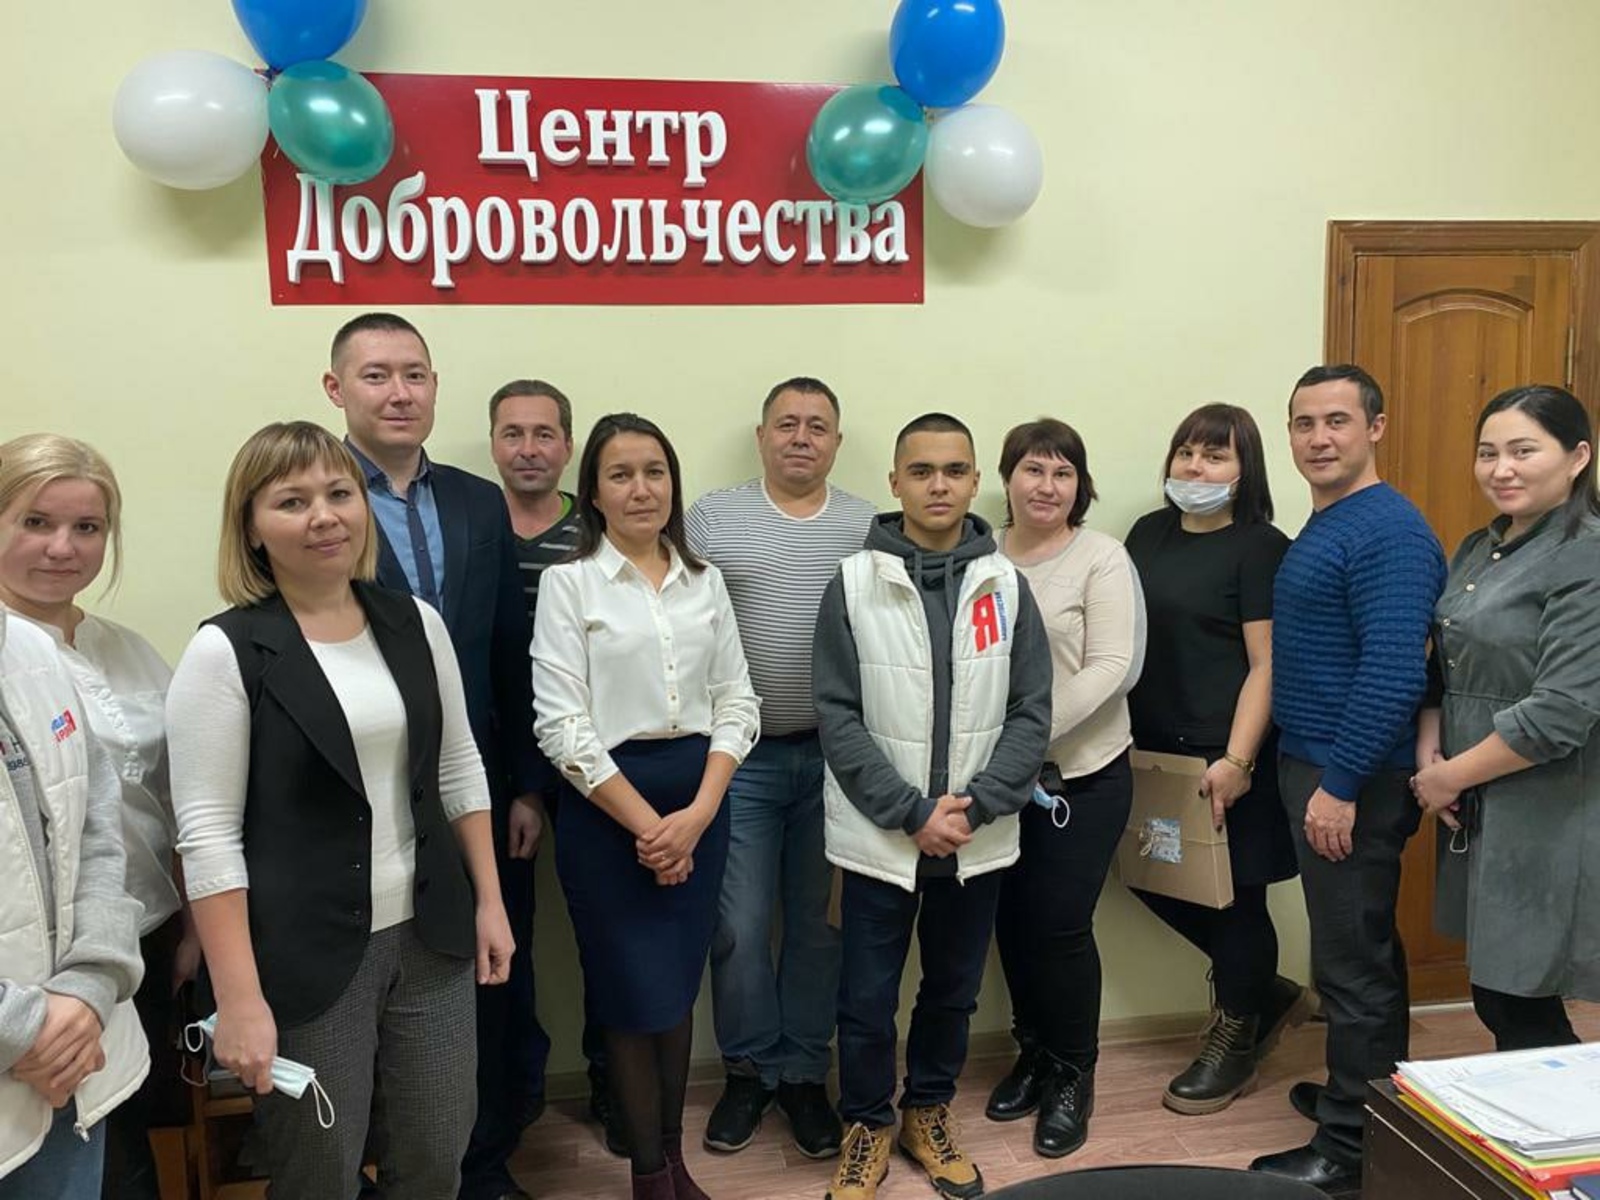 В Альшеевском районе Башкирии открылся Центр добровольчества